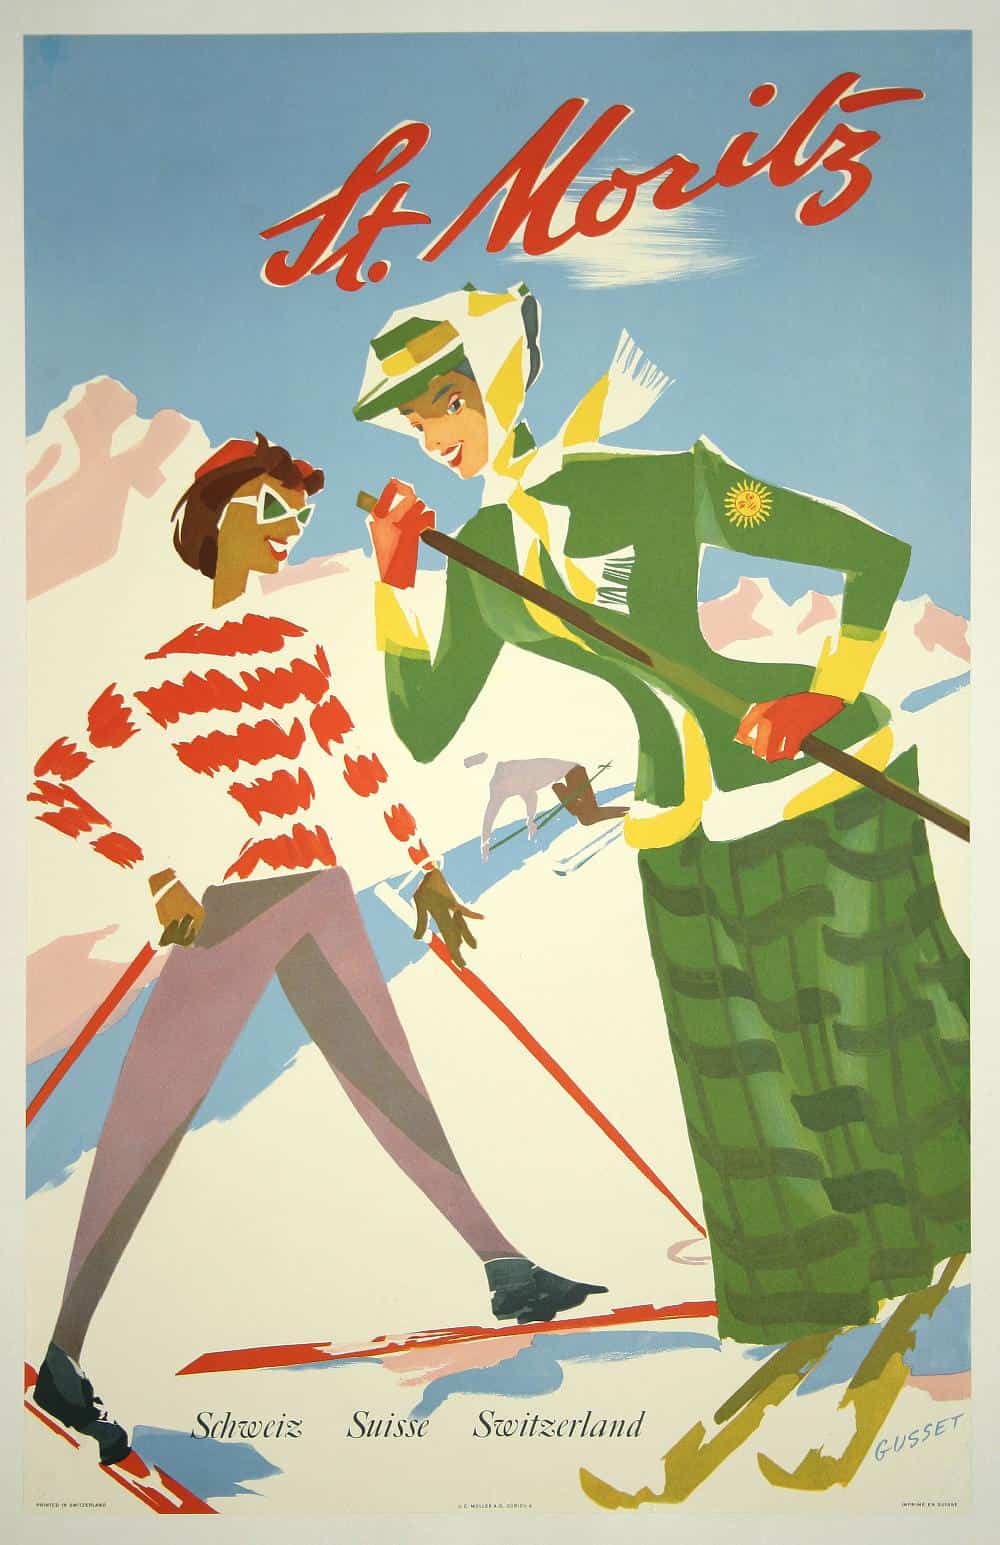 St Moritz Schweiz Suisse Switzerland Paul Gusset 1948 Vintage Travel Poster